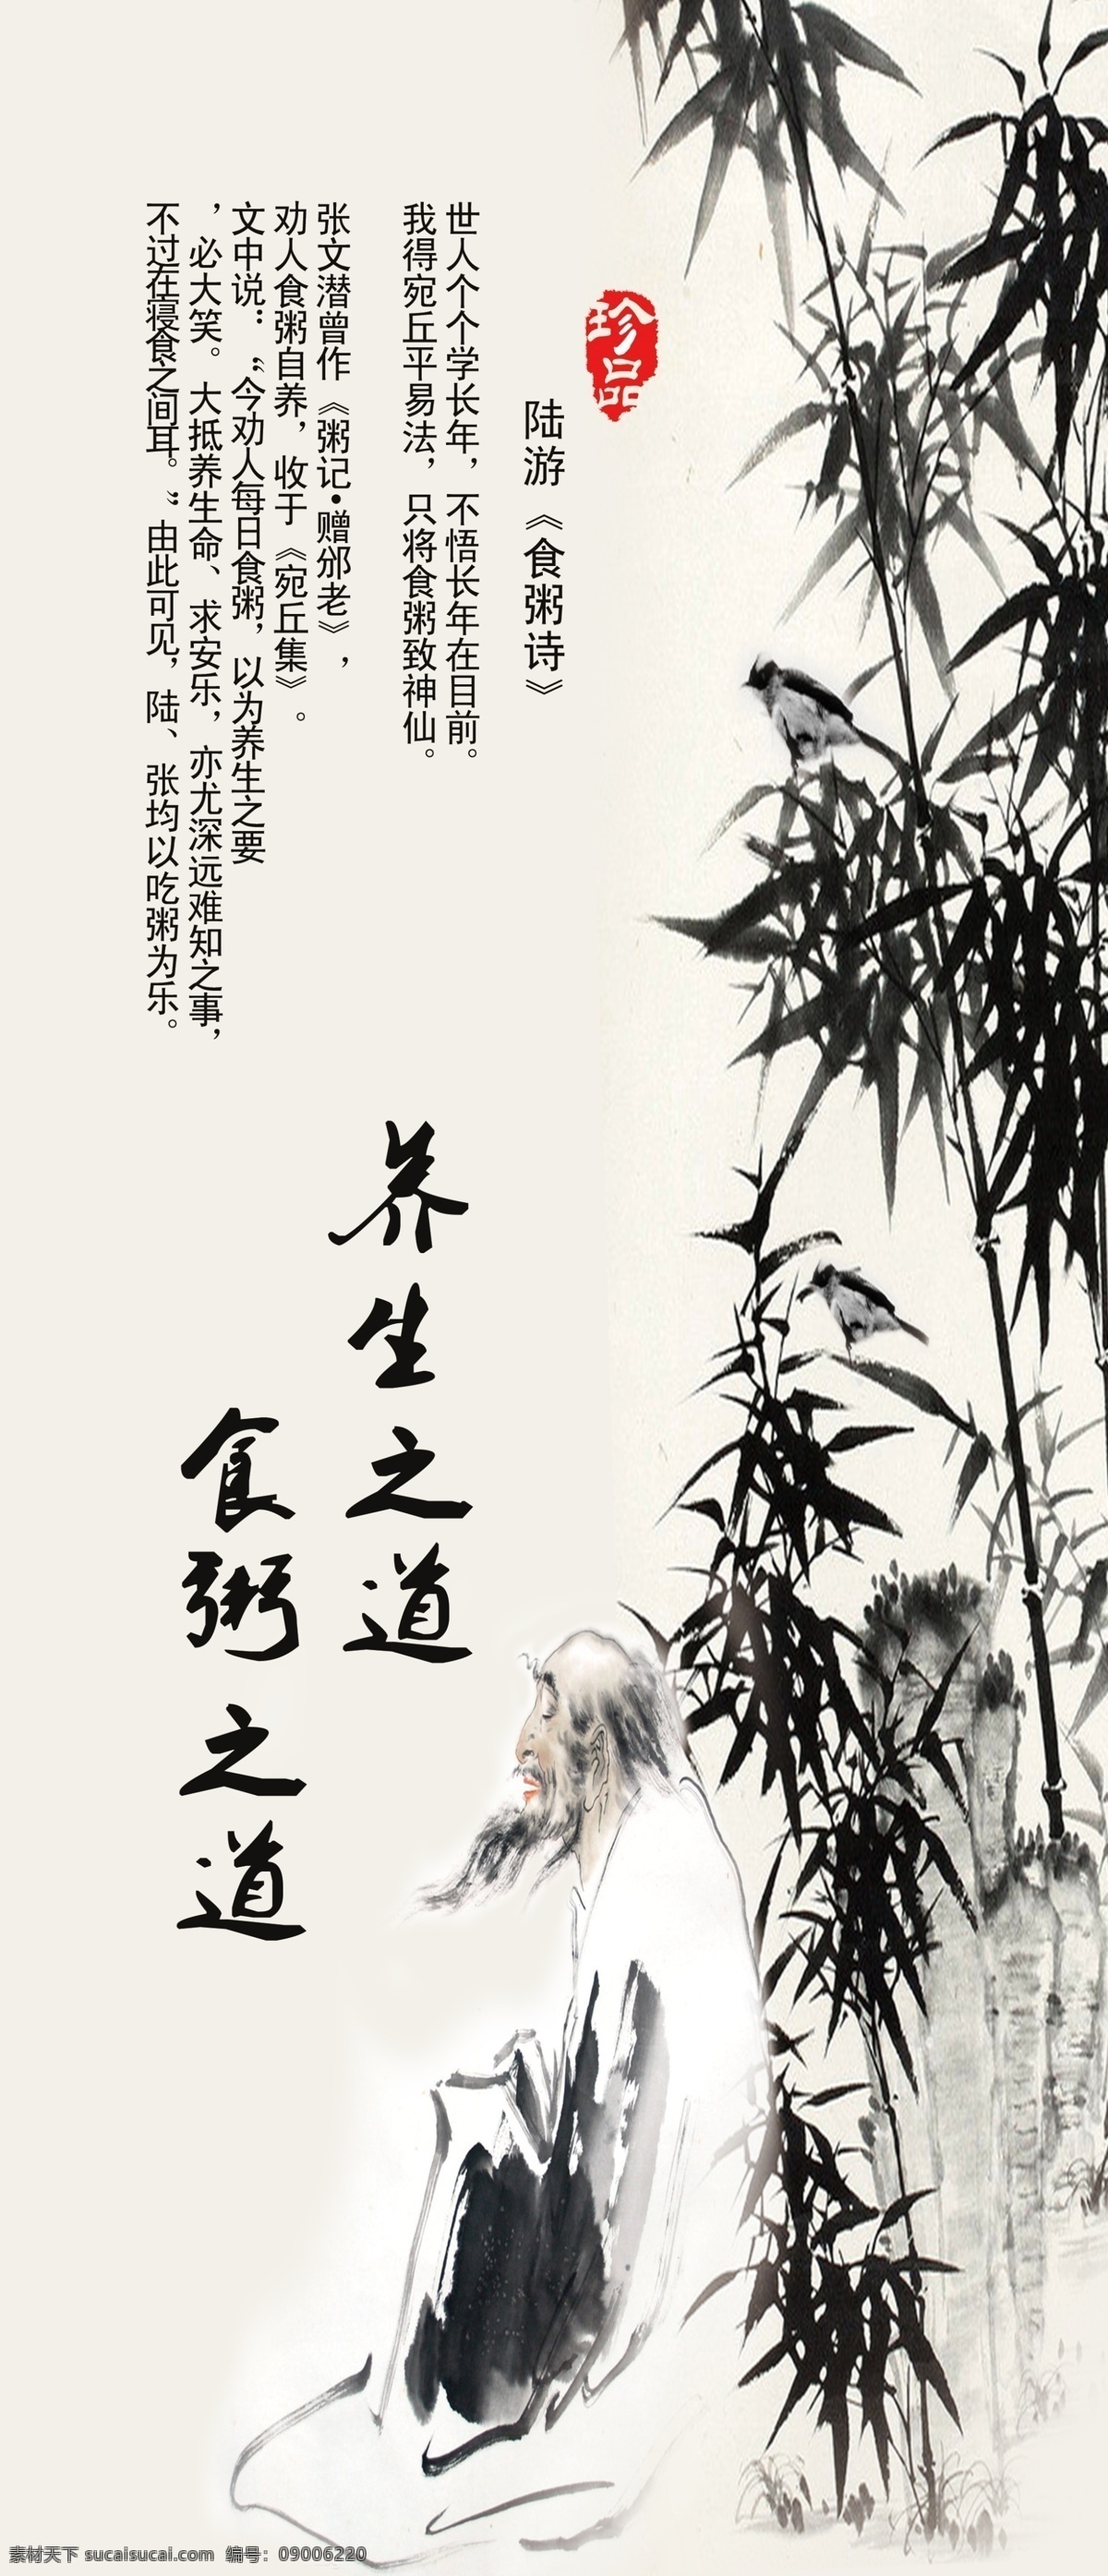 中国画 陆游诗 卷轴 海报 中国风 餐饮